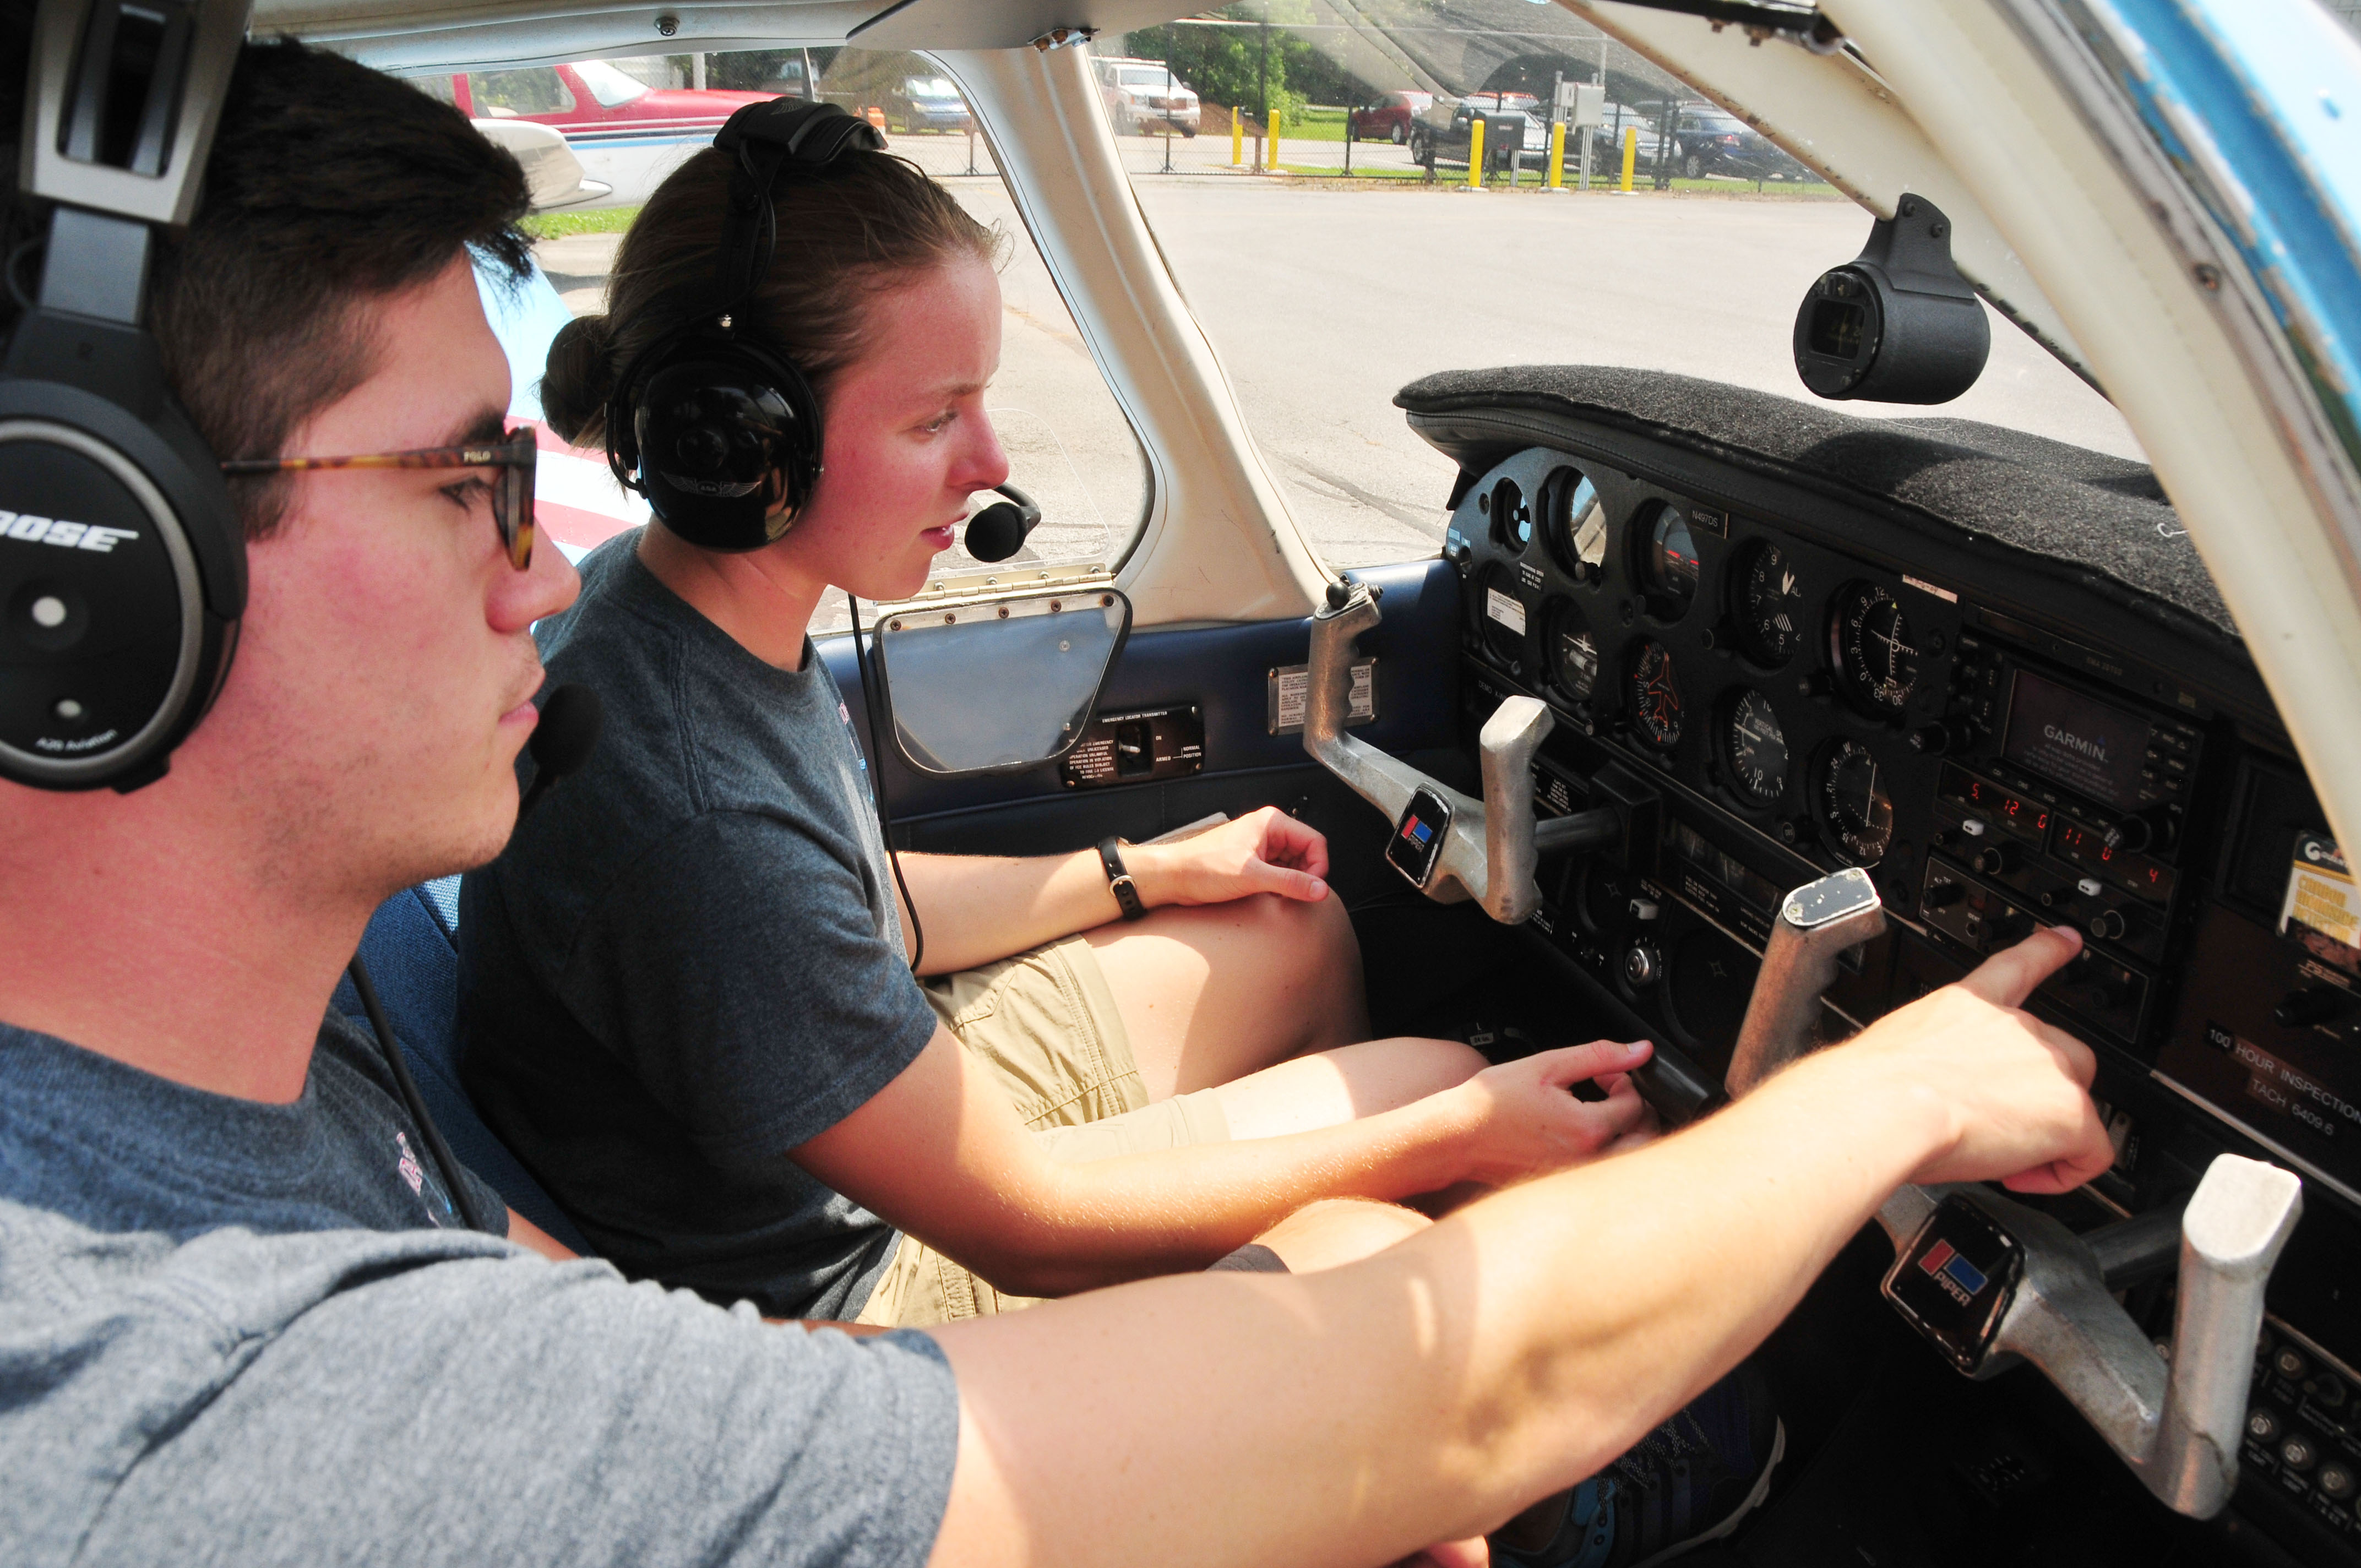 Cadet Capt. Erin Dundas received cockpit instruction from DSU Aviation instructor Mark Ramos.